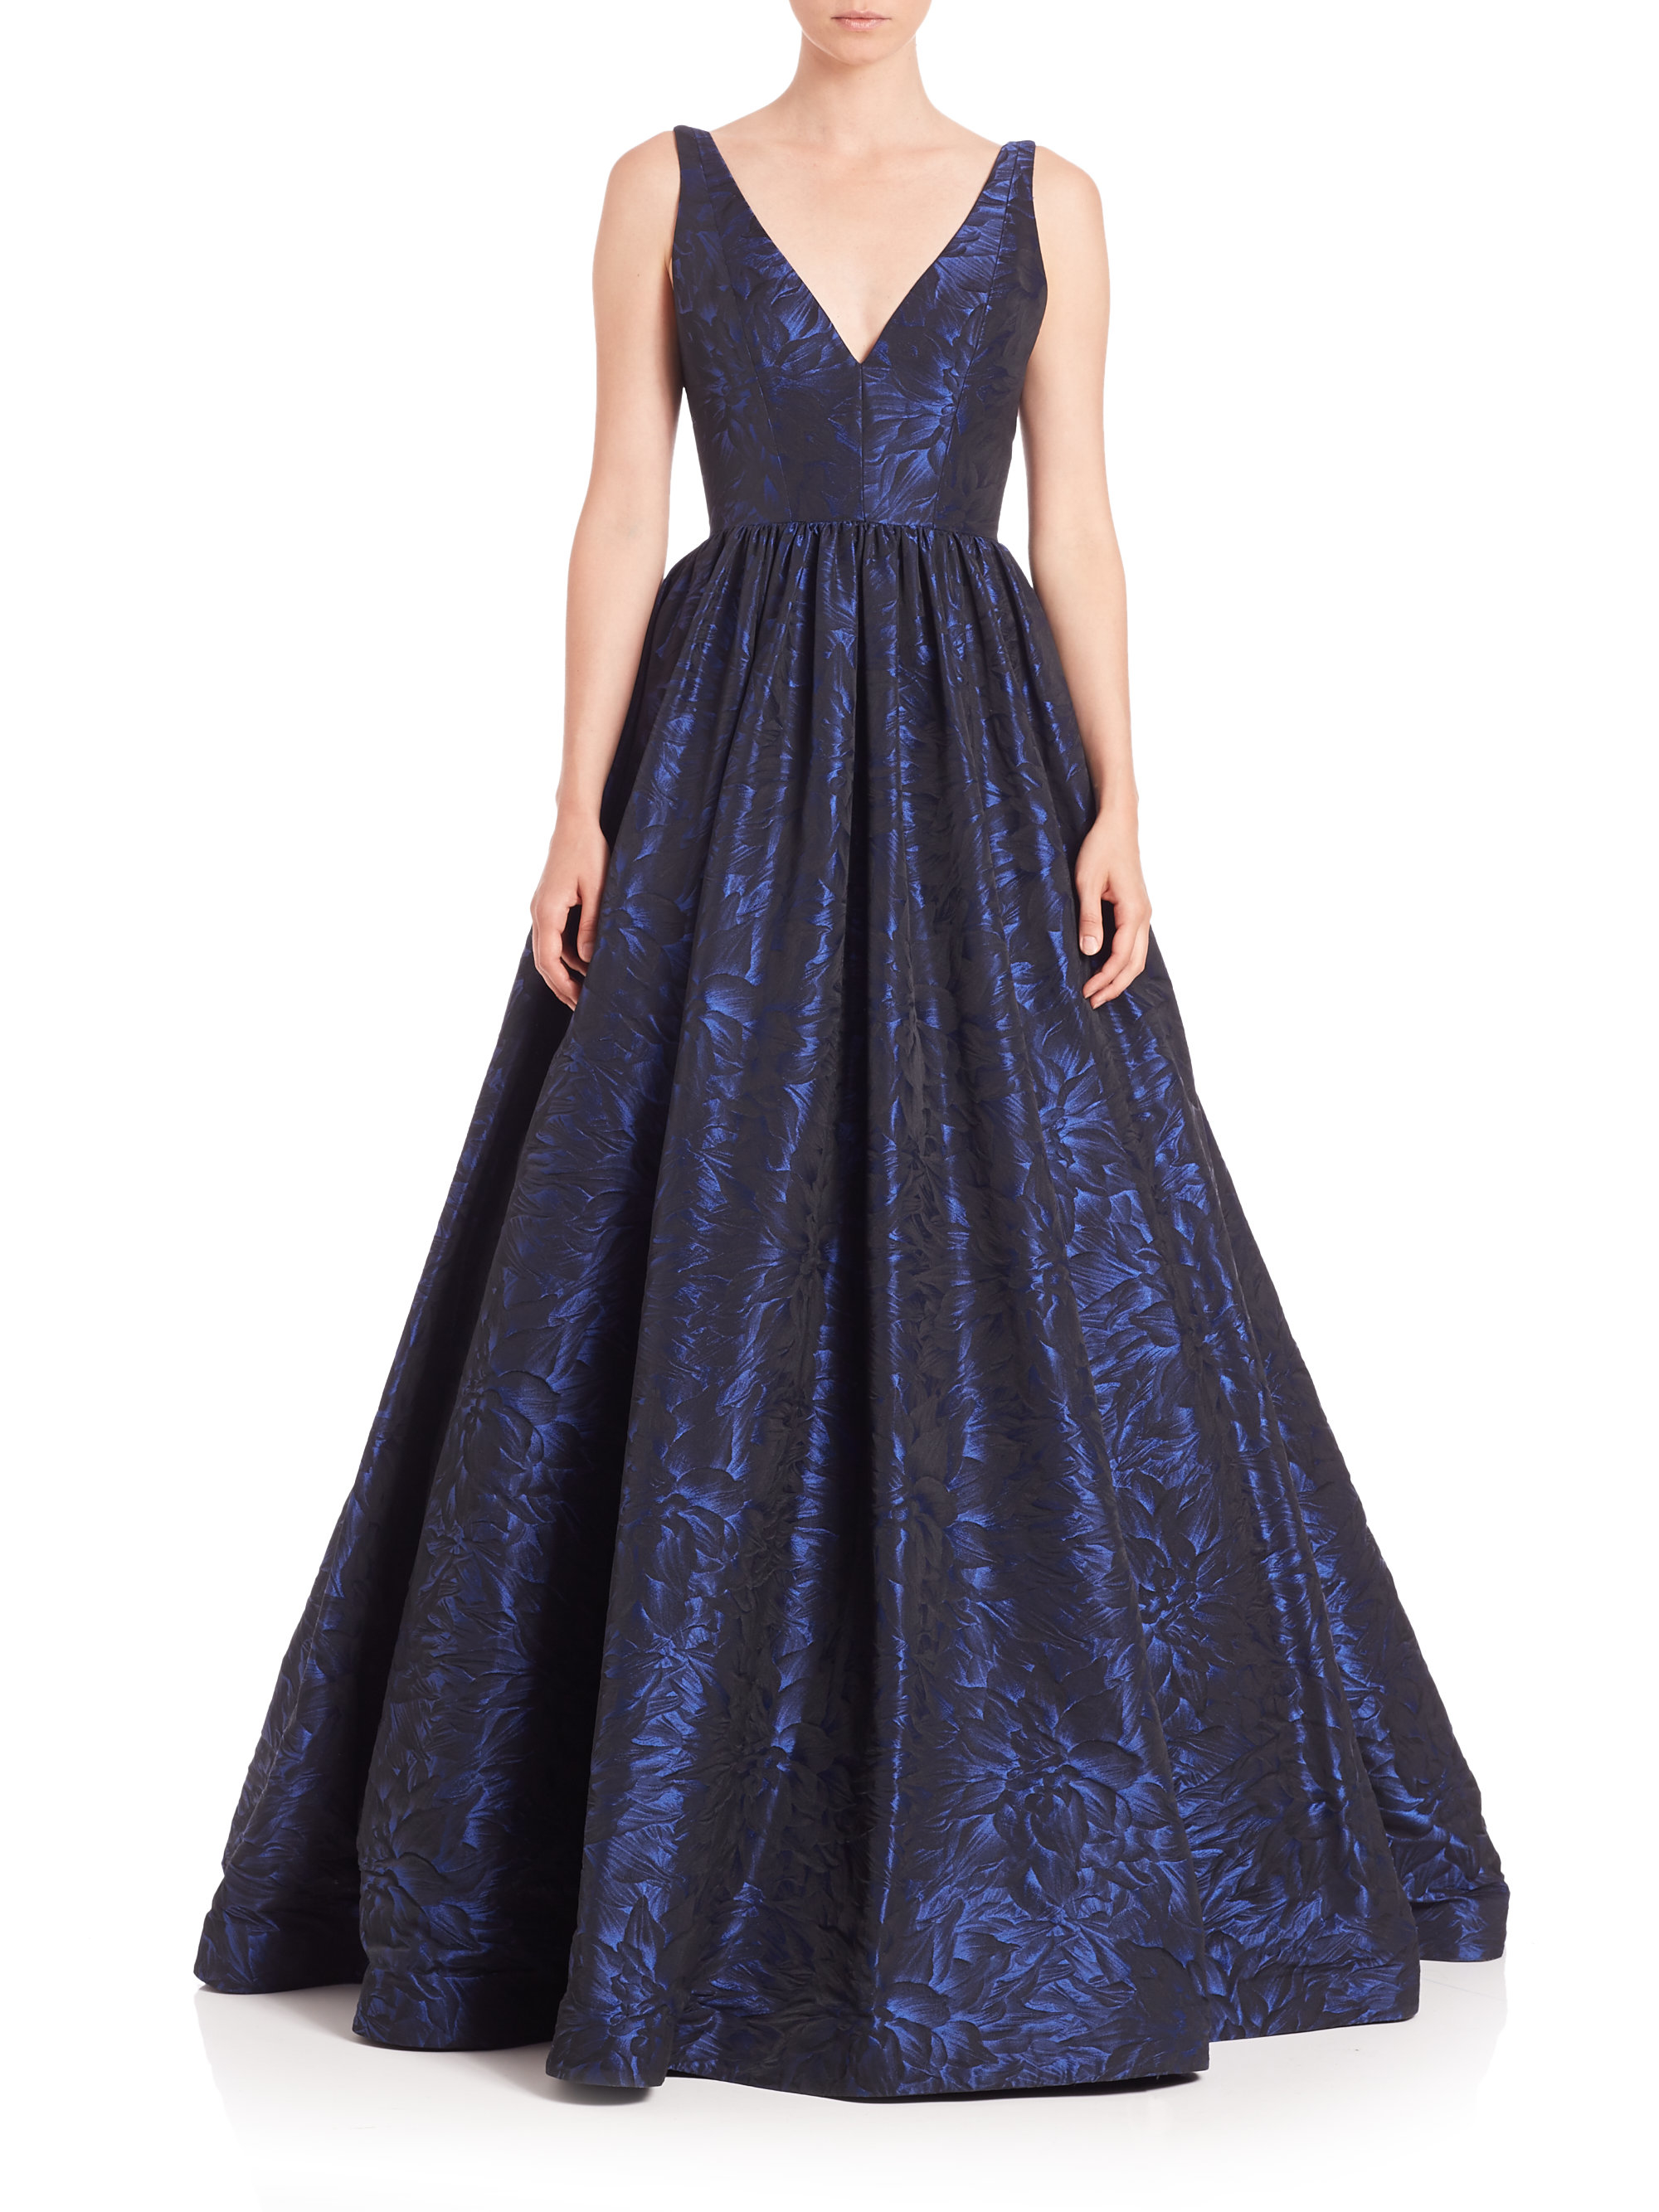 Lyst - Ml Monique Lhuillier V-neck Floral Jacquard Gown in Blue